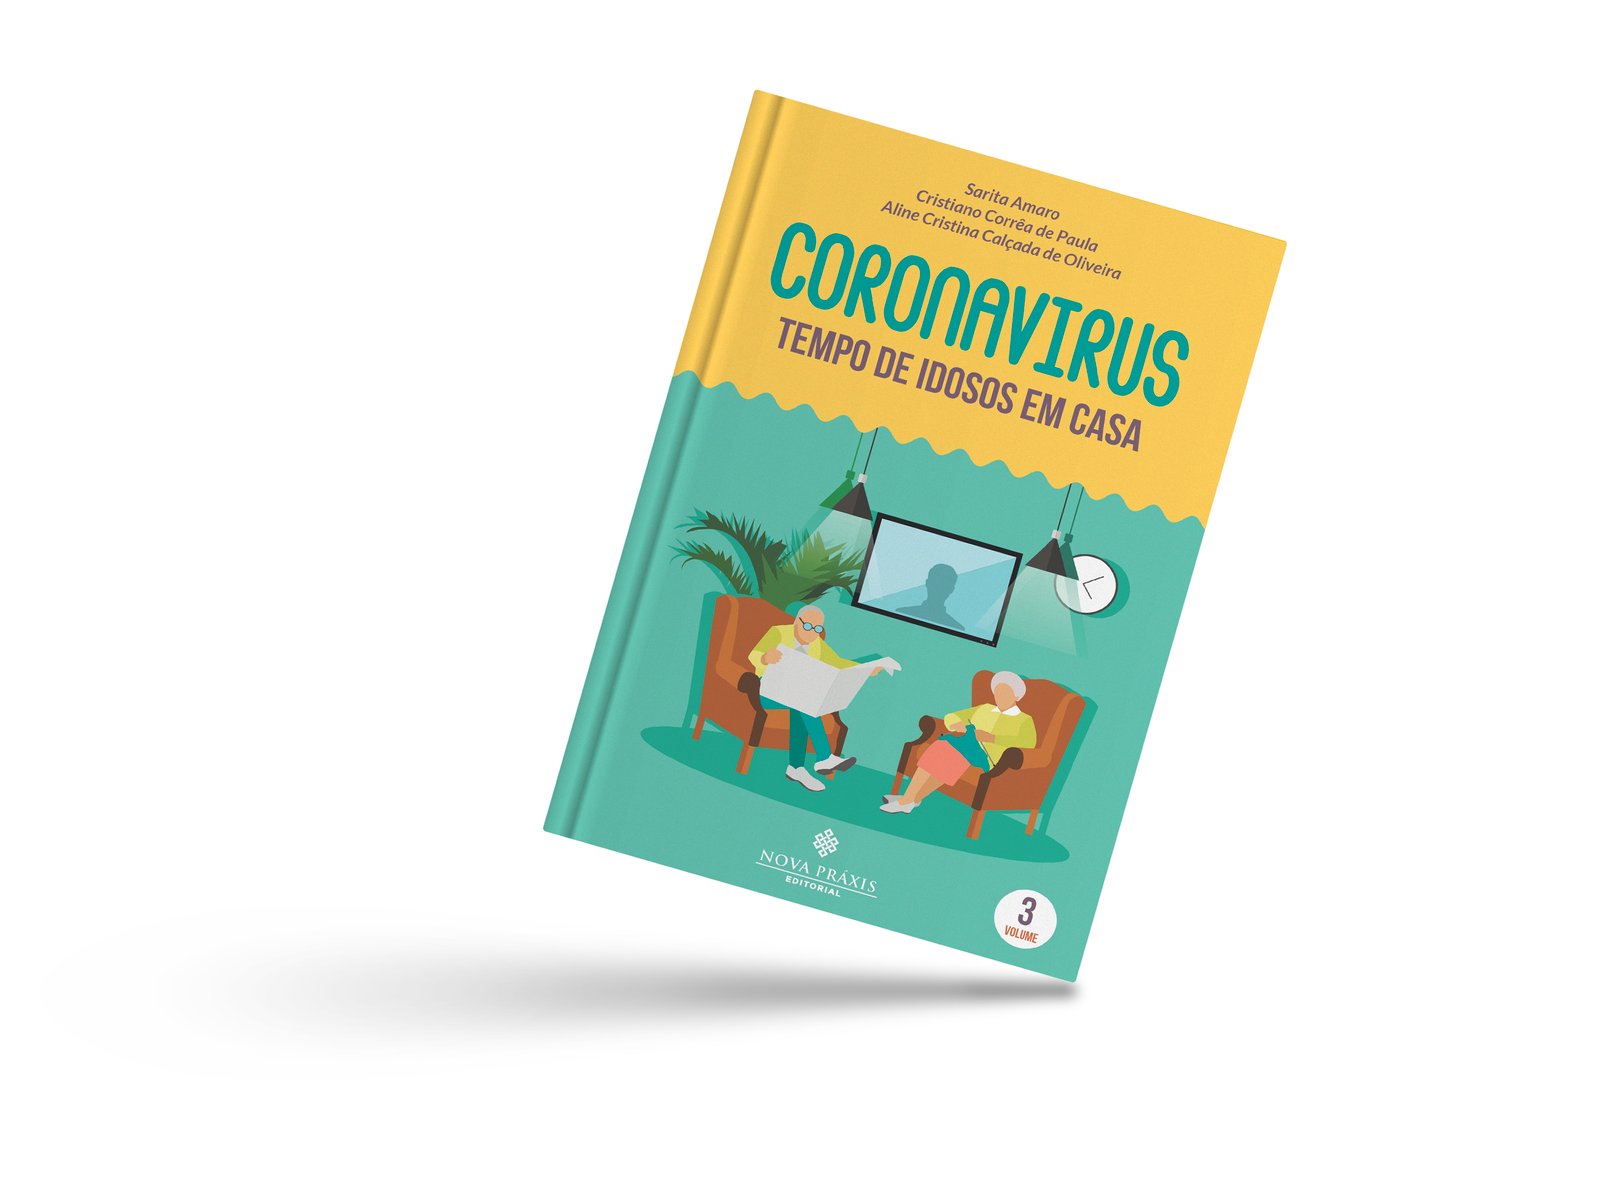 Coronavírus : tempo de idosos em casa (e-Book)